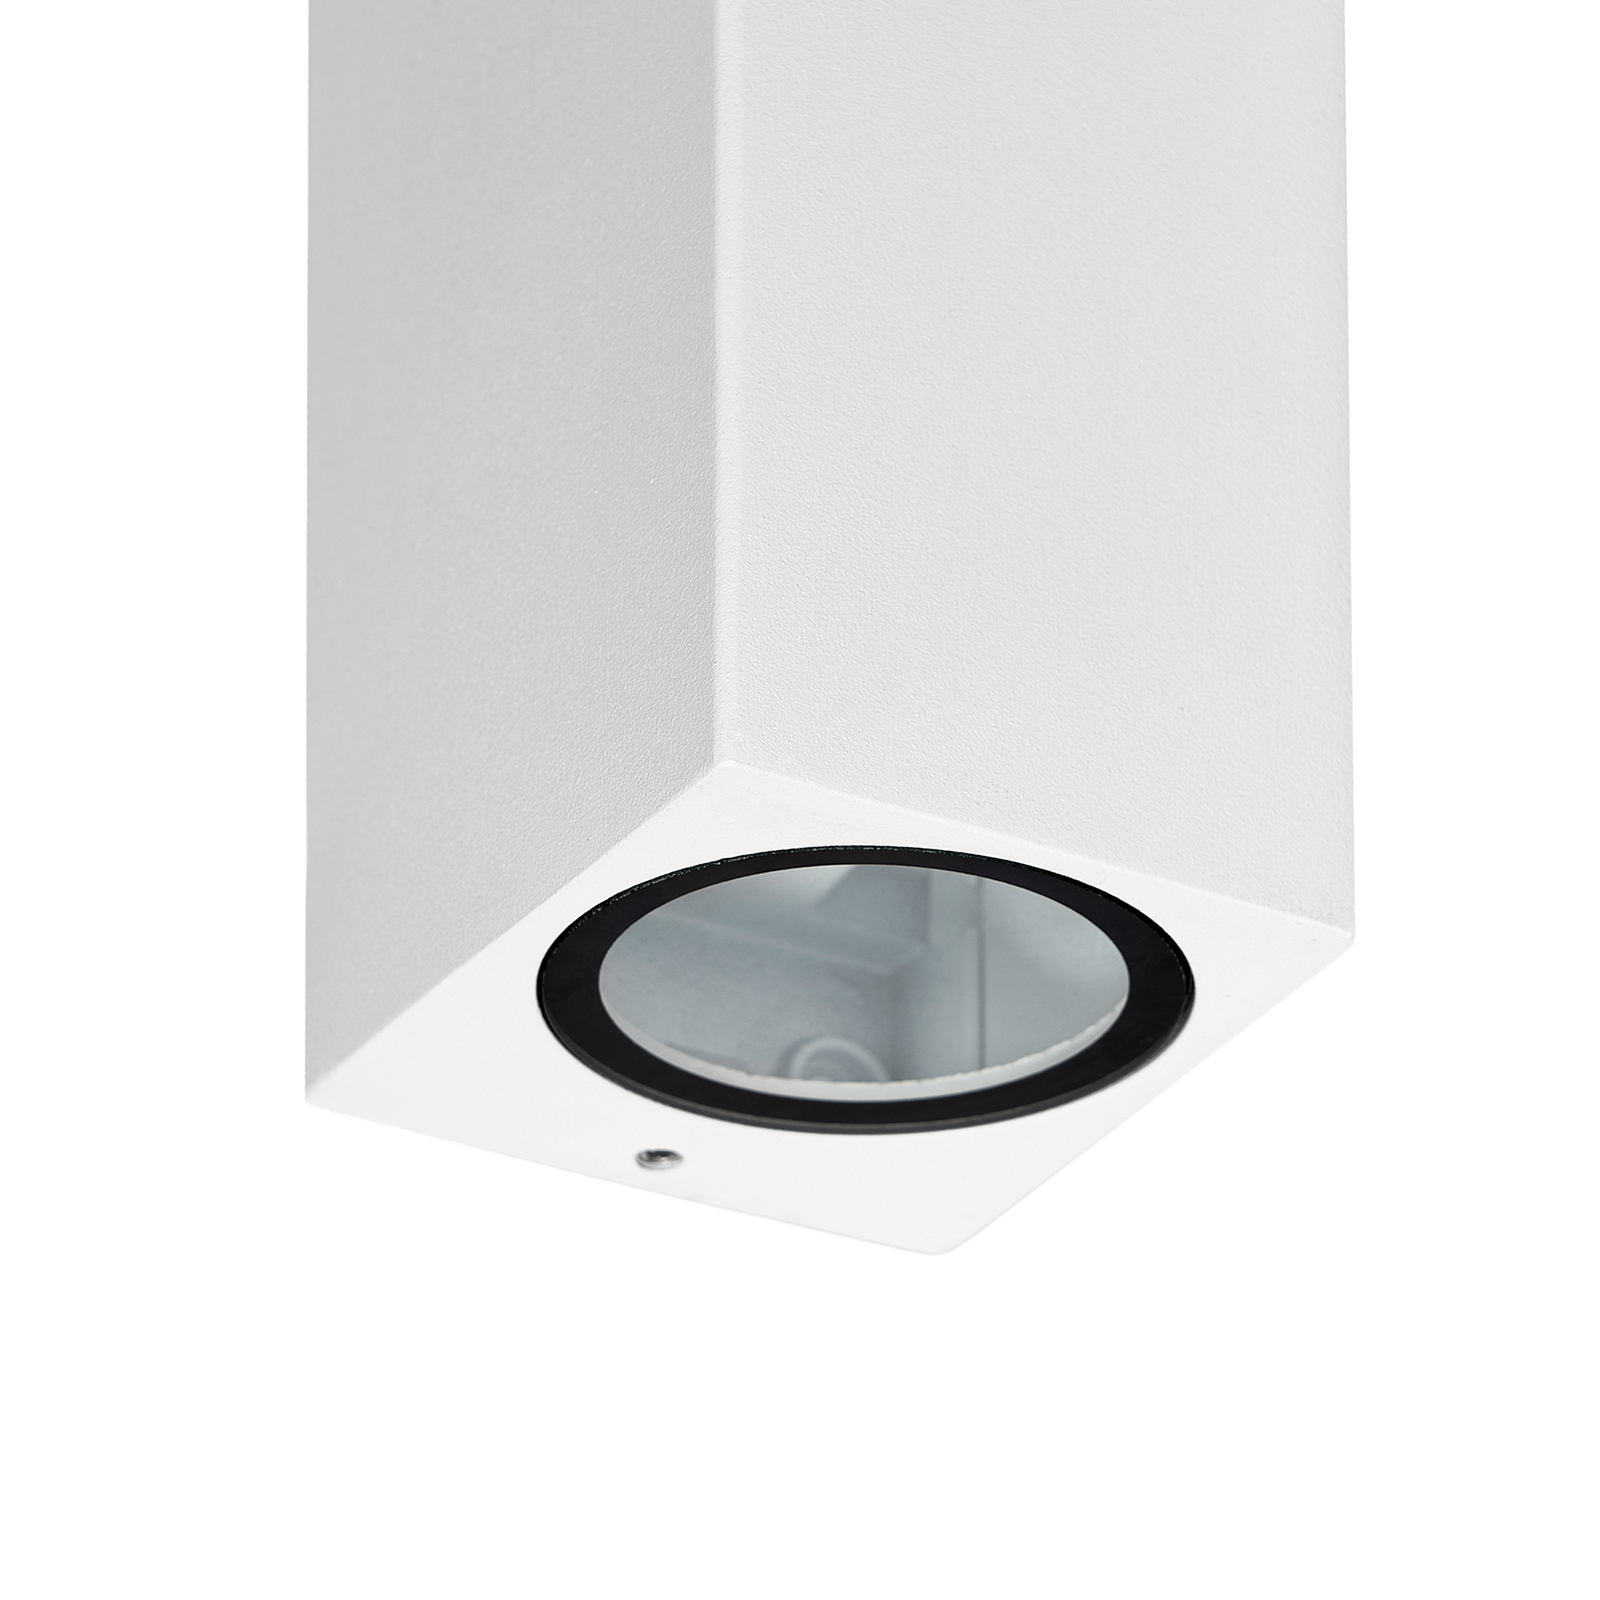 Prios kültéri fali lámpa Tetje, fehér, szögletes, 16 cm-es, szögletes